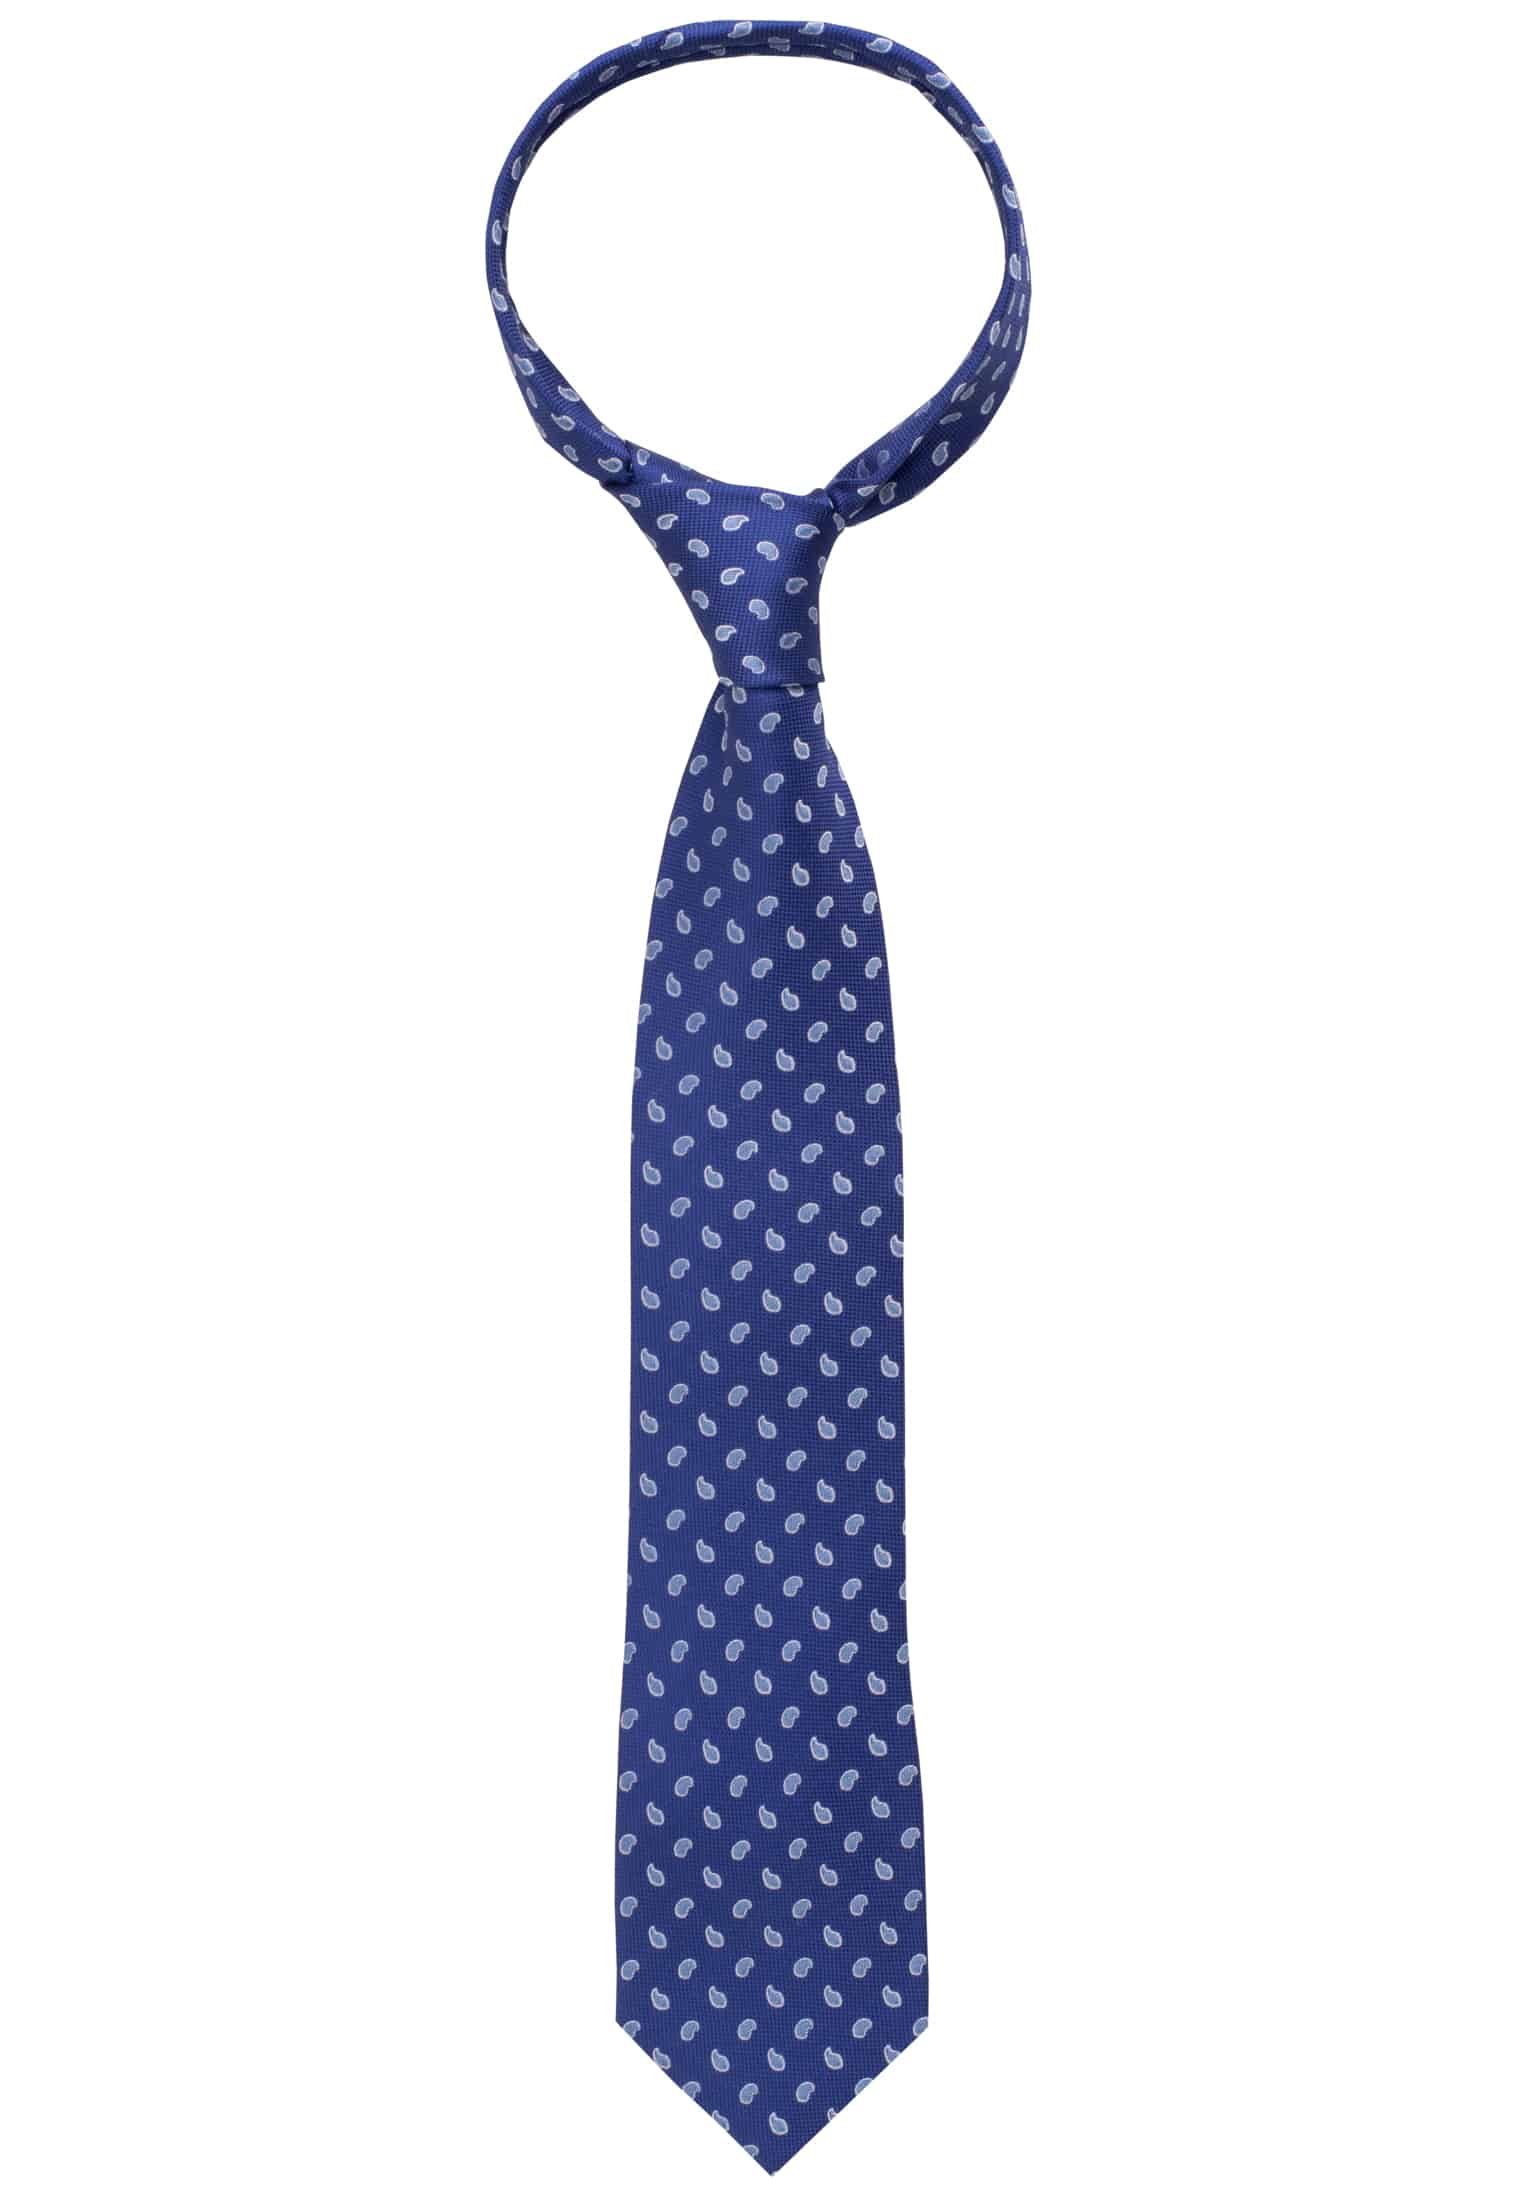 Krawatte in navy/blau 1AC00541-81-83-142 | | | navy/blau 142 gemustert